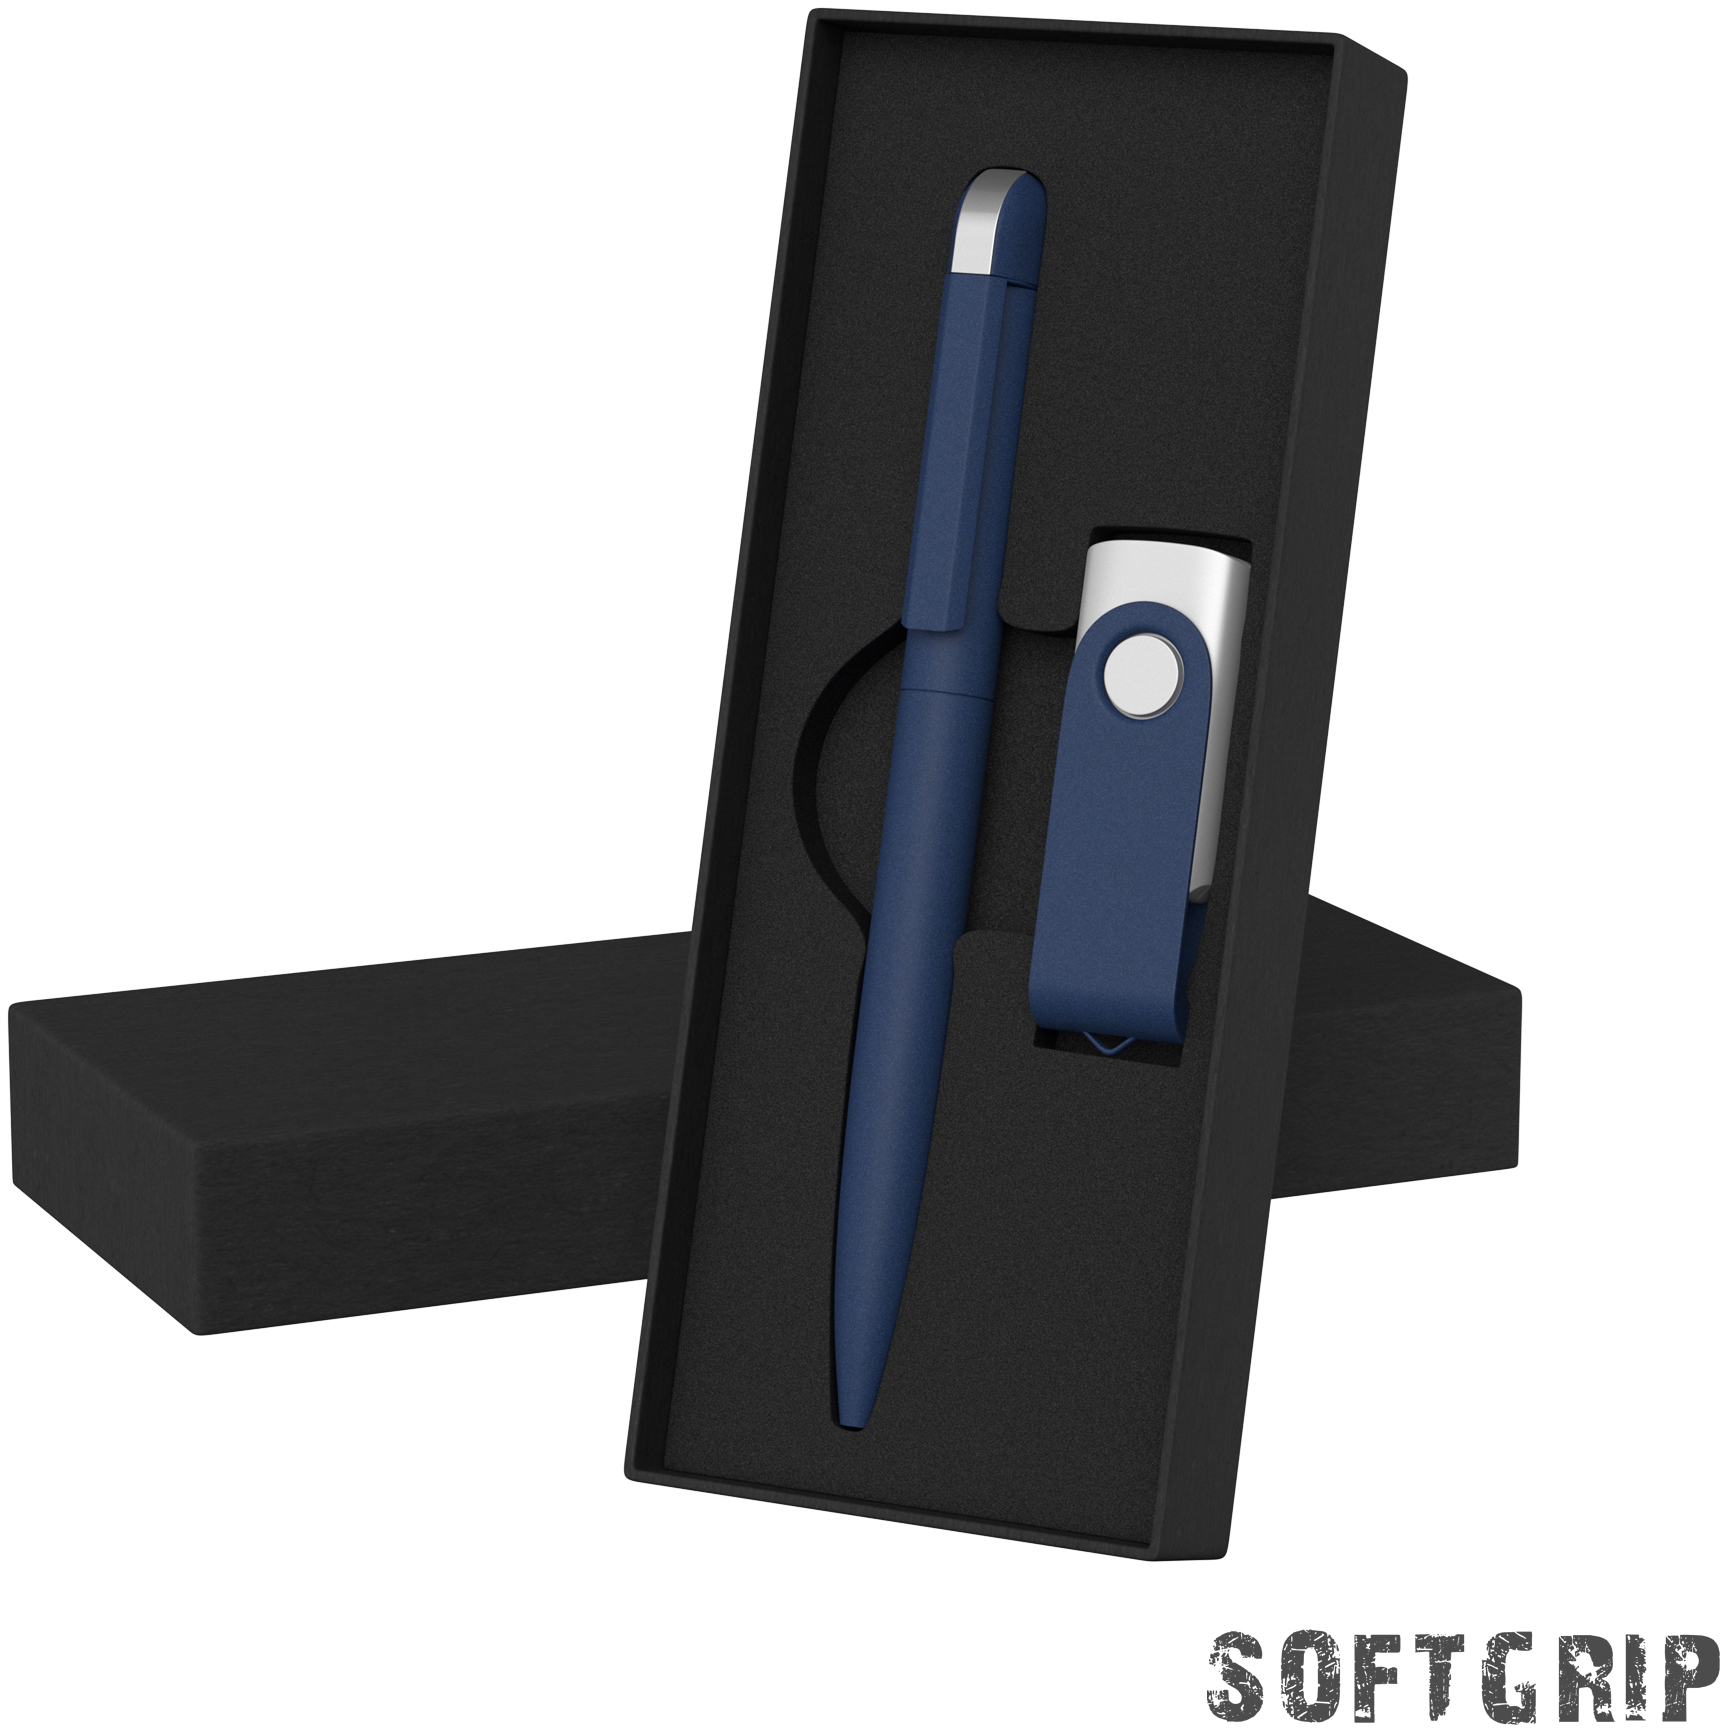 Артикул: E6971-21/8Gb — Набор ручка + флеш-карта 8 Гб в футляре, покрытие softgrip